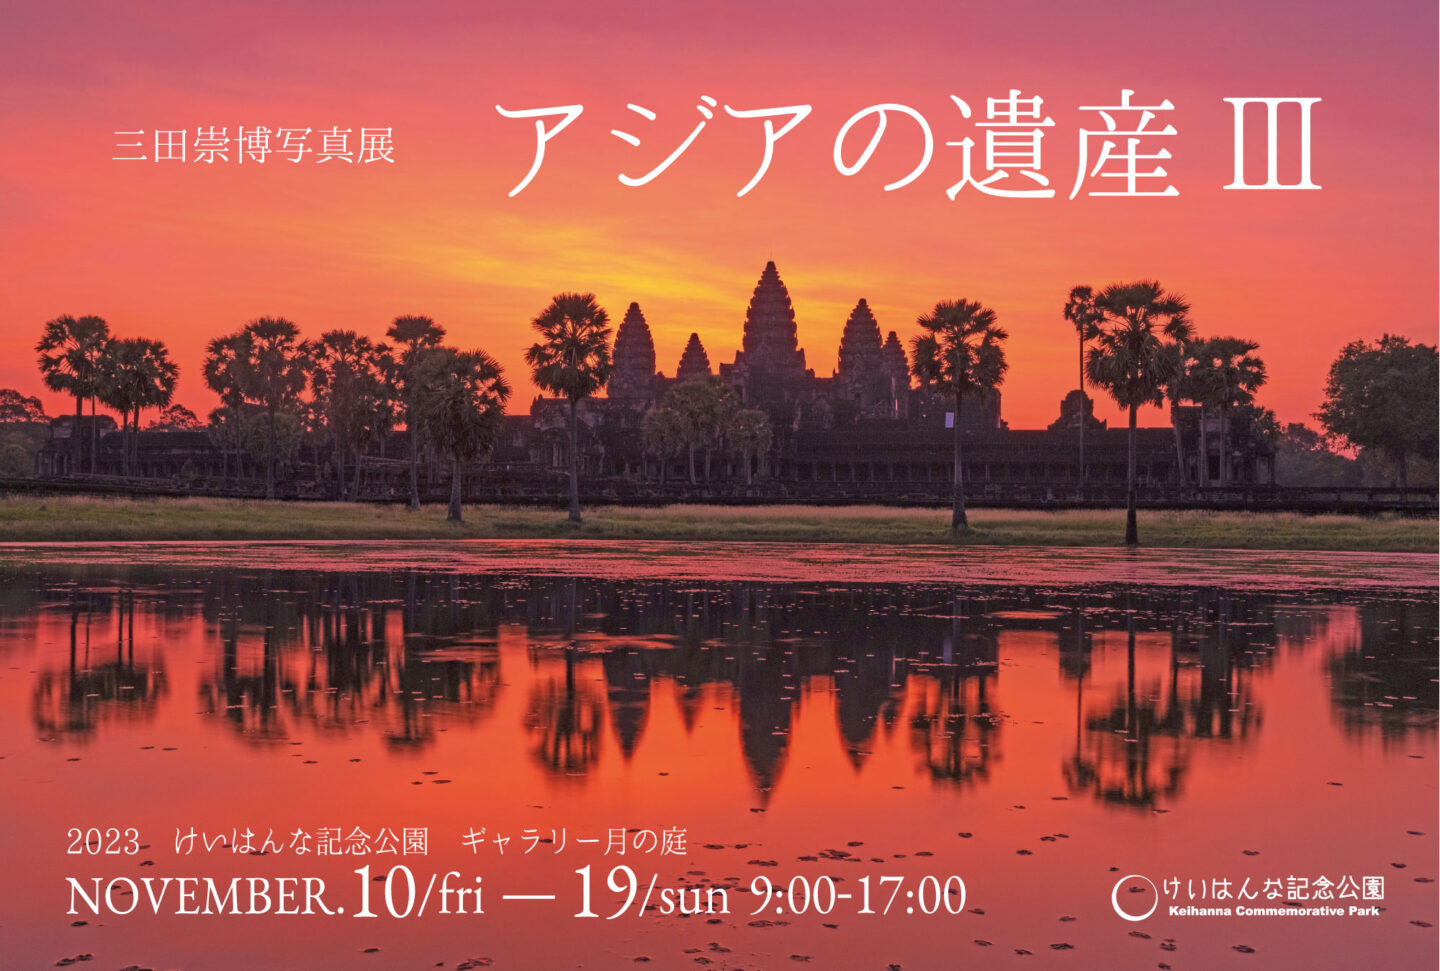 三田崇博 写真展『アジアの遺産Ⅲ』11月10日～19日@京都・けいはんな記念公園ギャラリー月の庭